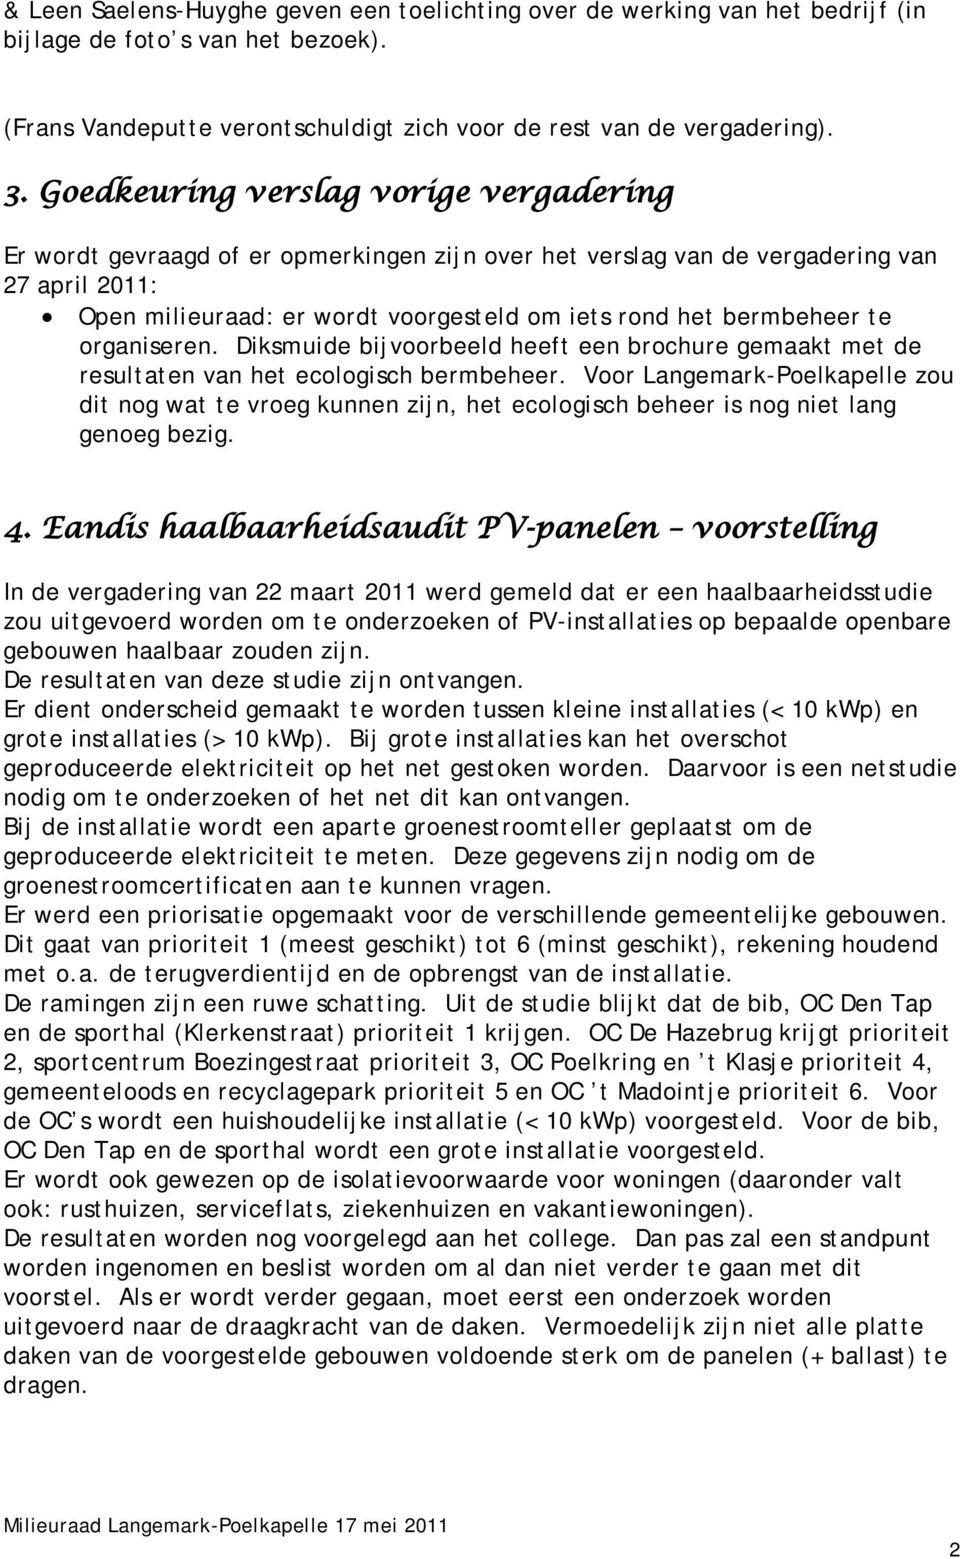 bermbeheer te organiseren. Diksmuide bijvoorbeeld heeft een brochure gemaakt met de resultaten van het ecologisch bermbeheer.